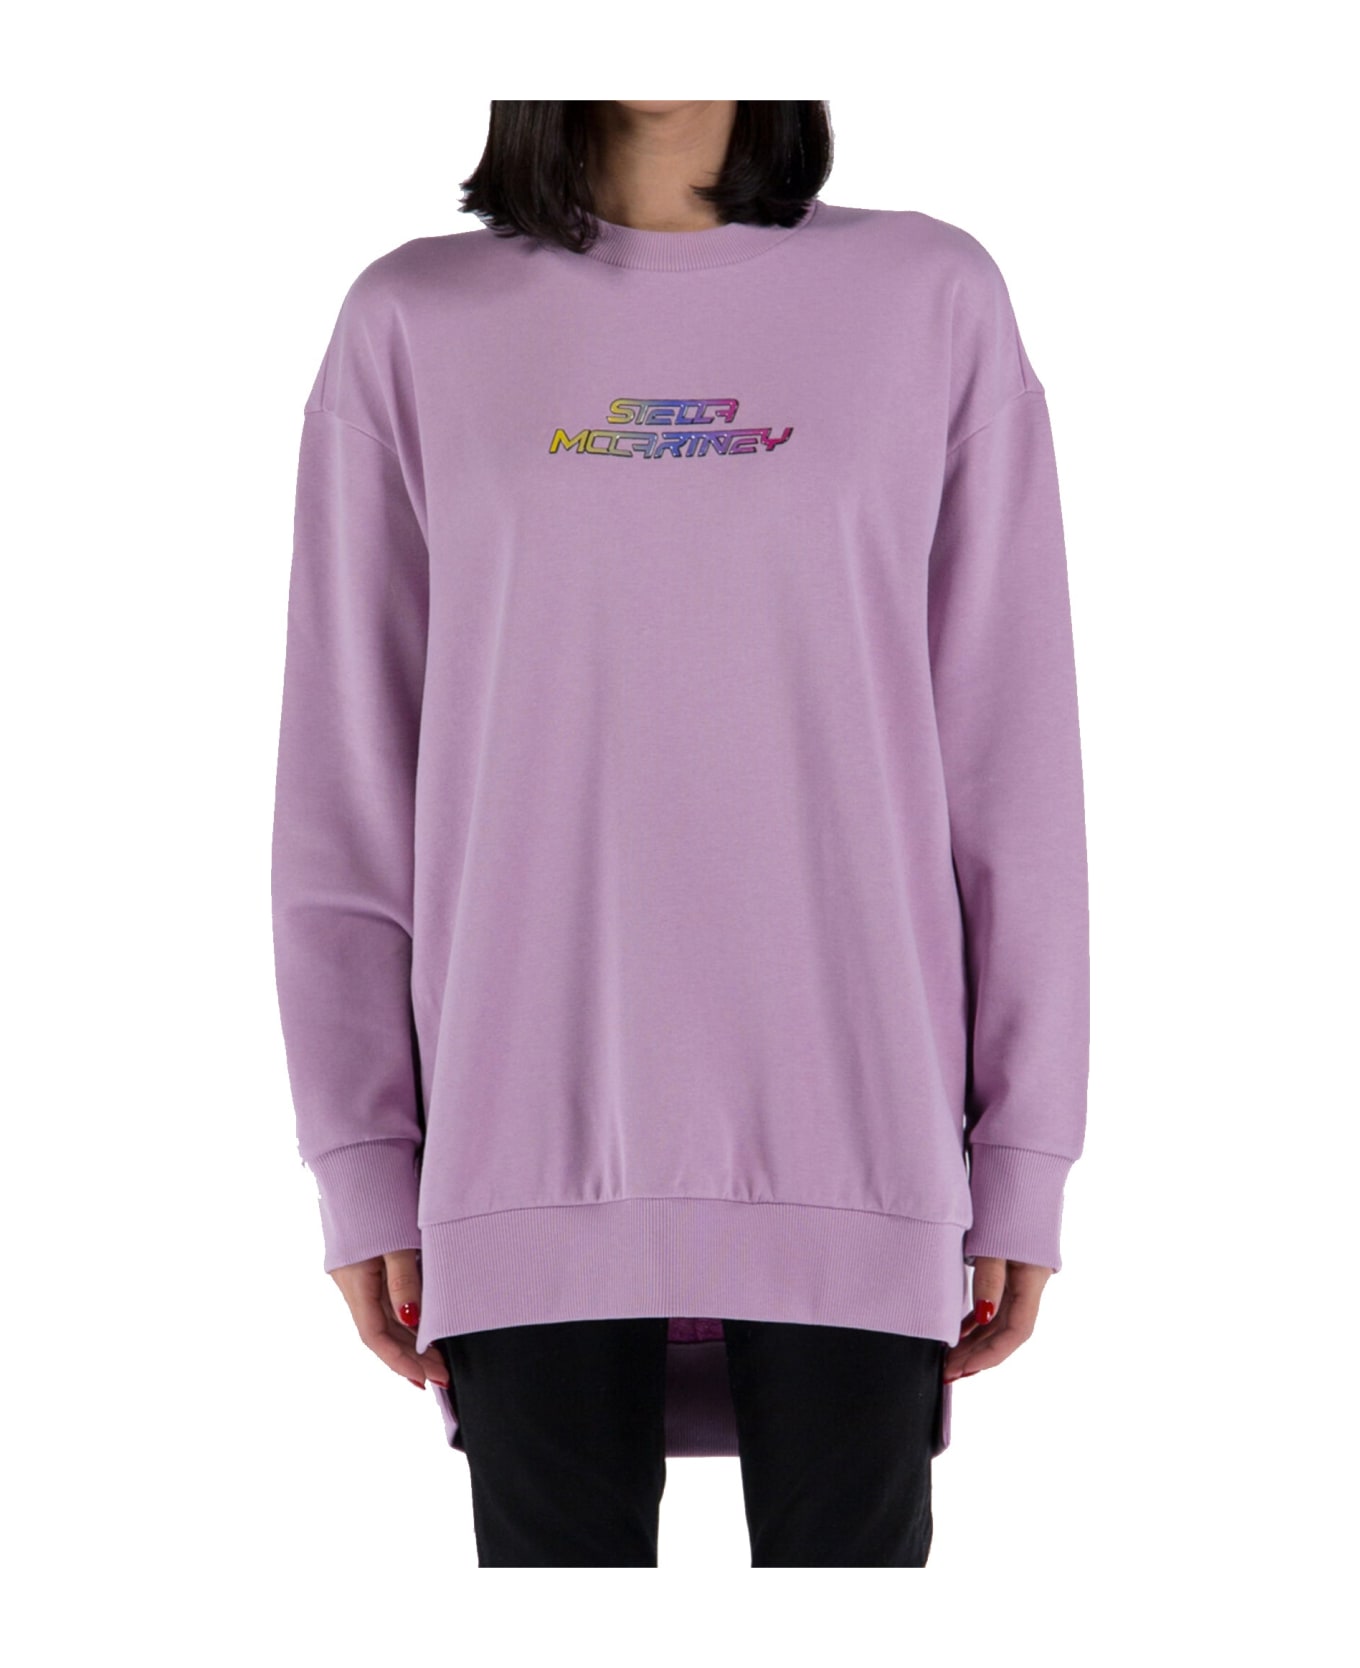 Stella McCartney Cotton Sweater - Pink